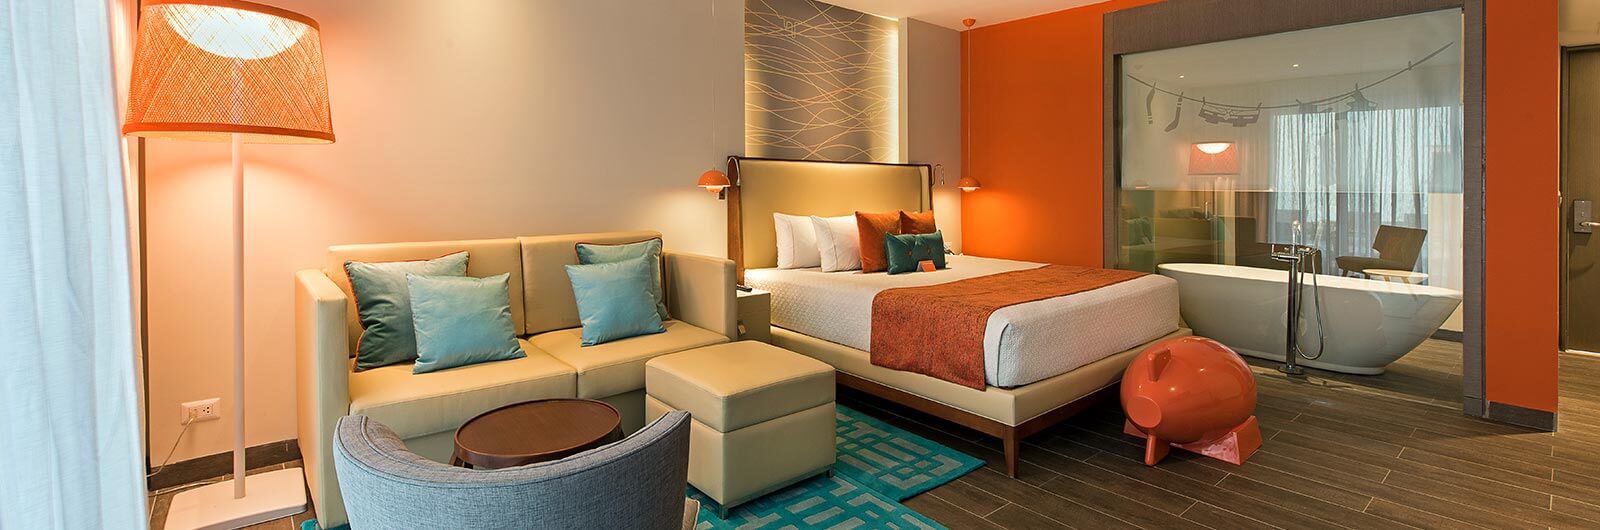 Nickelodeon Resort Punta Cana Accommodations - Pad Swim-Up Suite